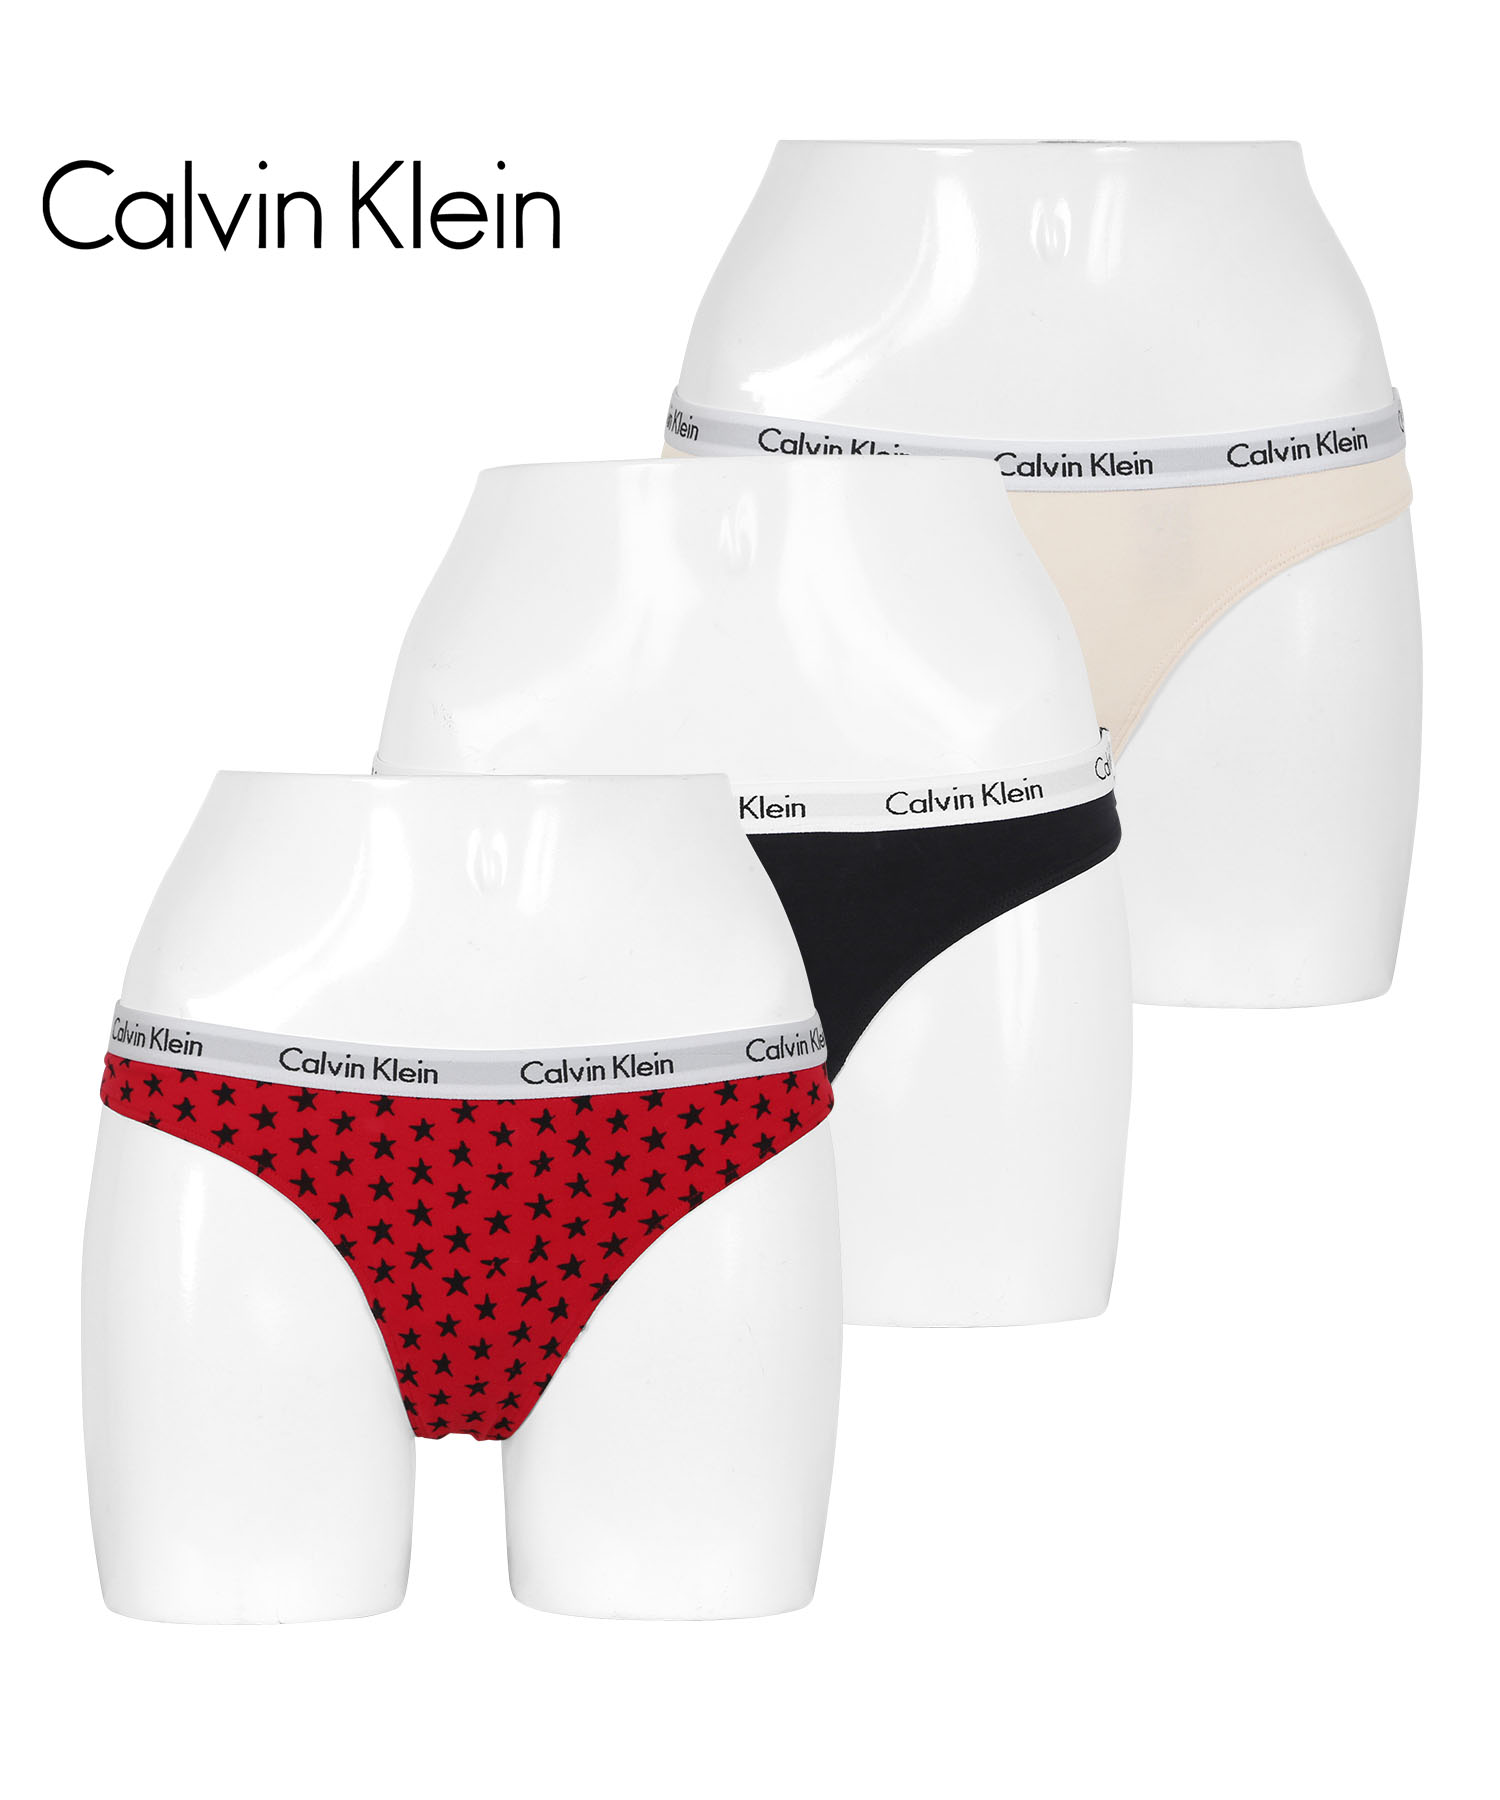 カルバンクライン Tバック 3枚セット レディース Calvin Klein アンダーウェア 女性 下着 CK